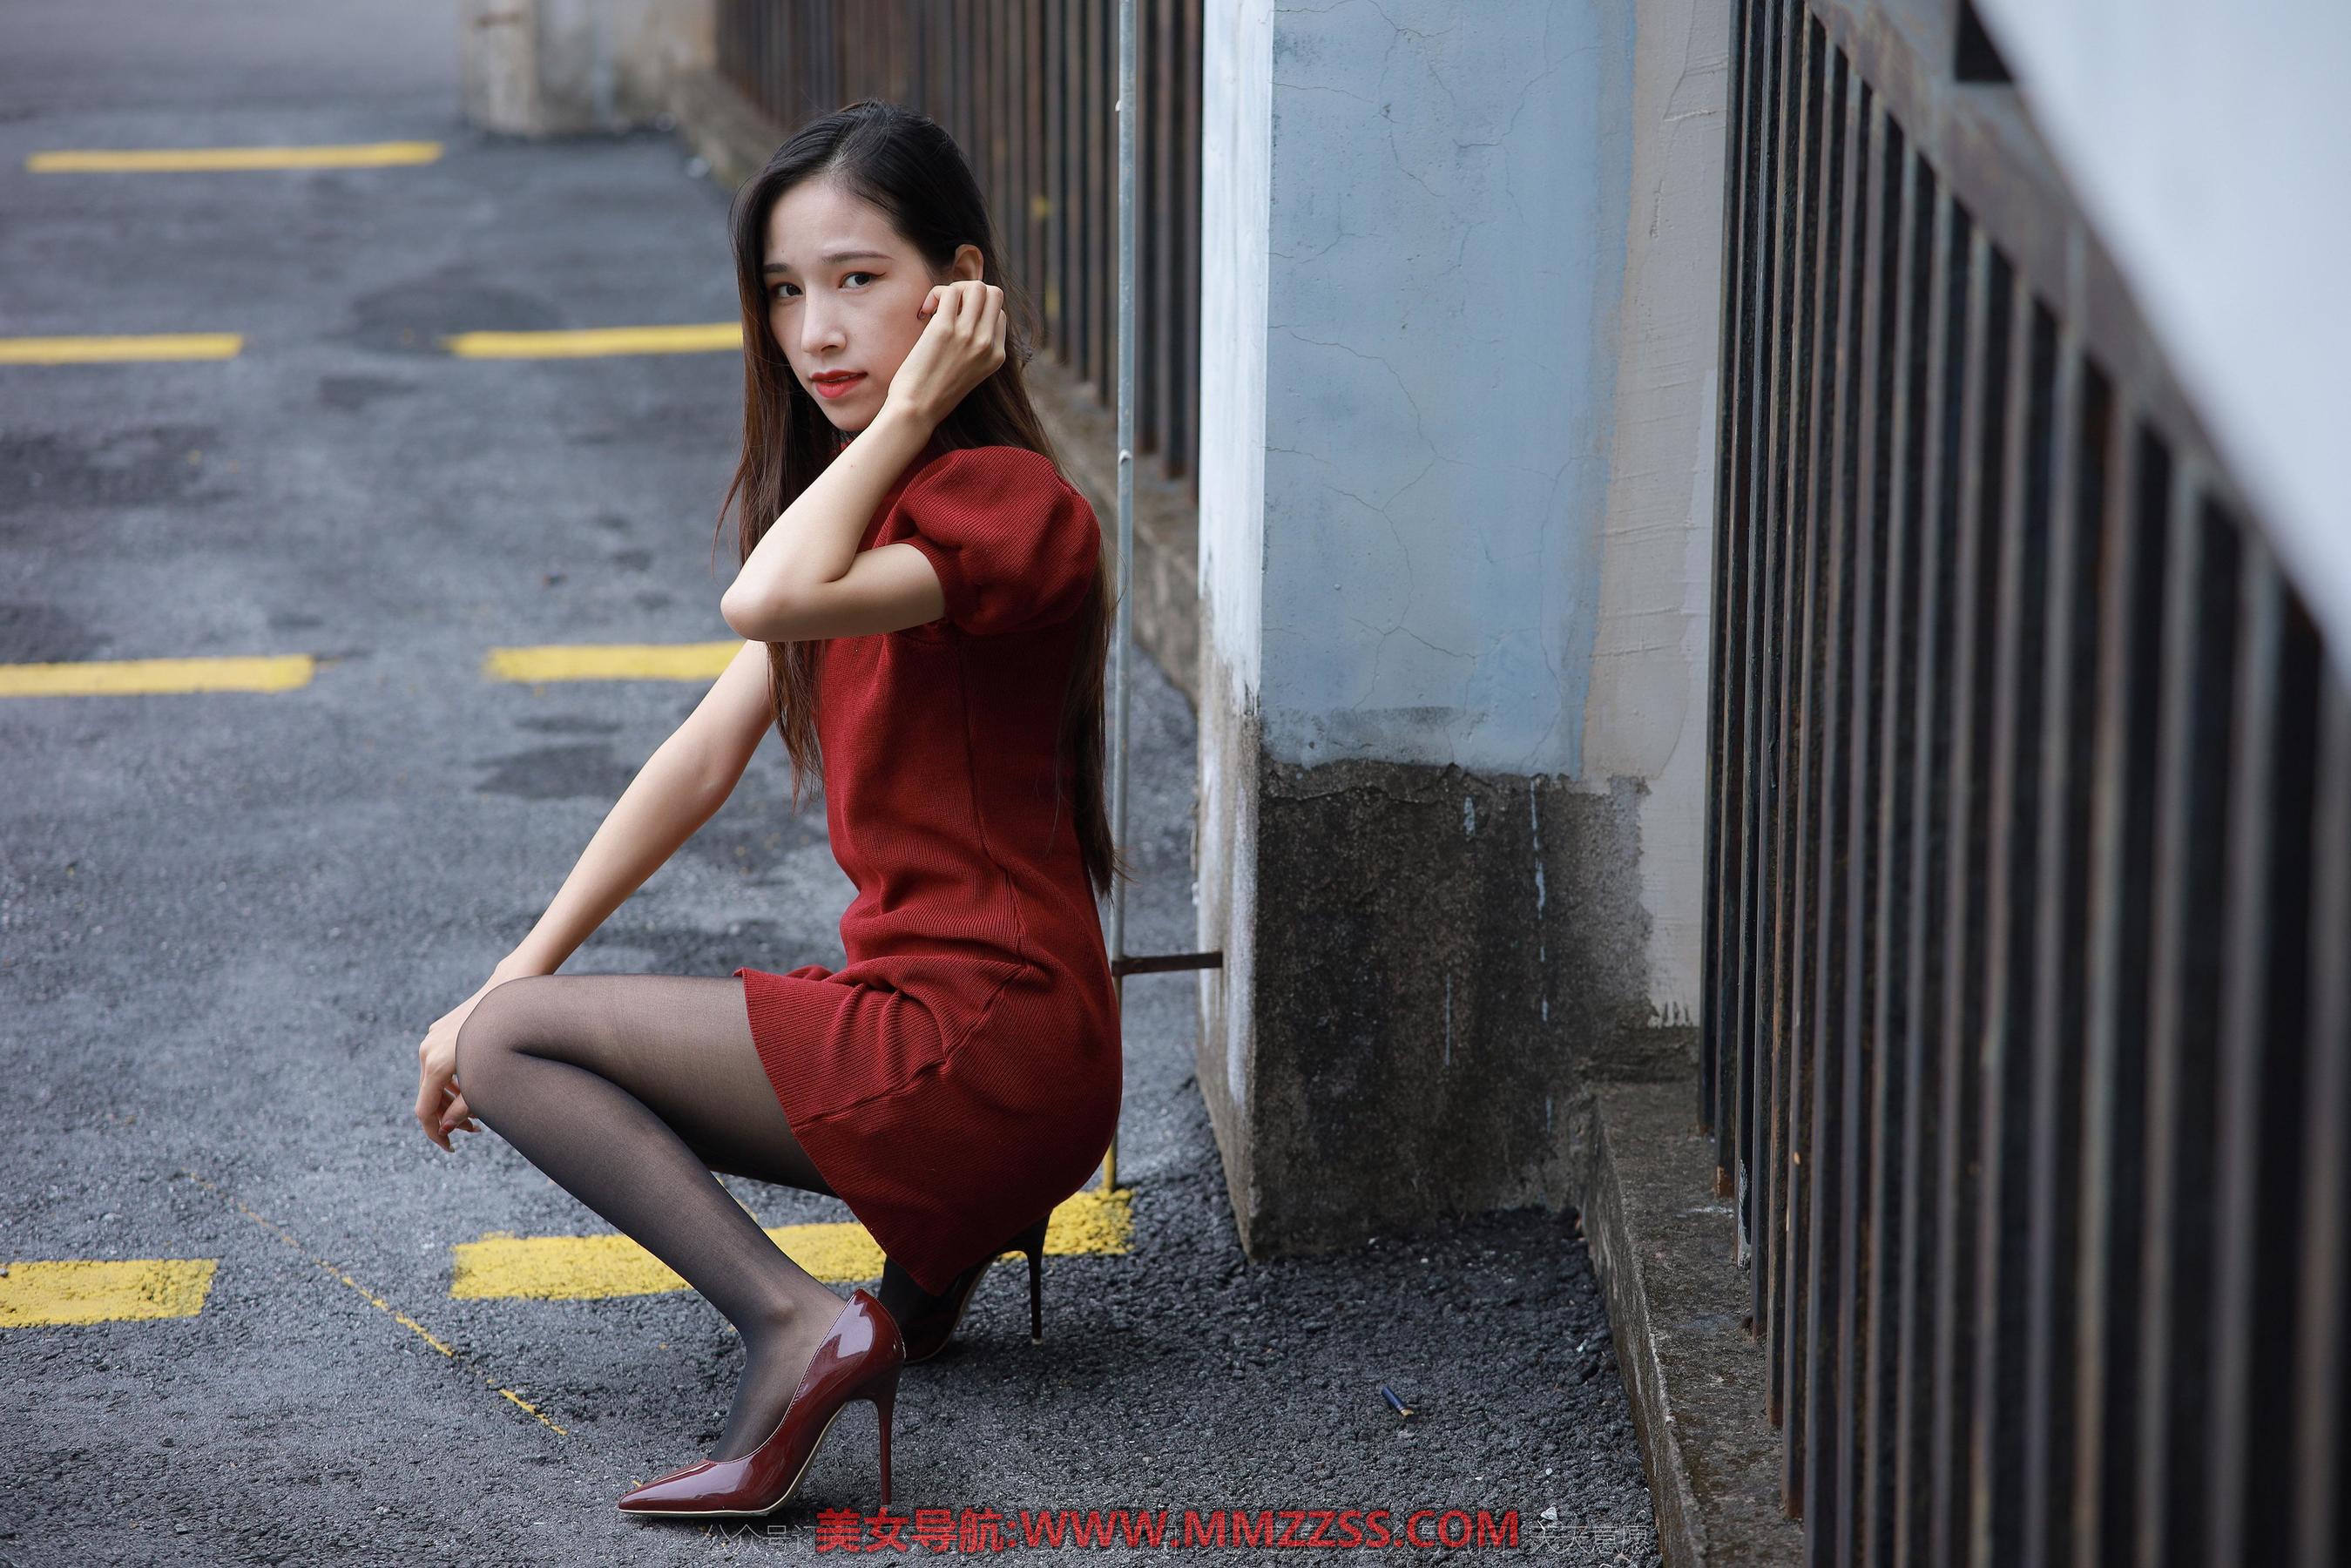 街拍红色个高跟鞋美女 - Tumblr Pics